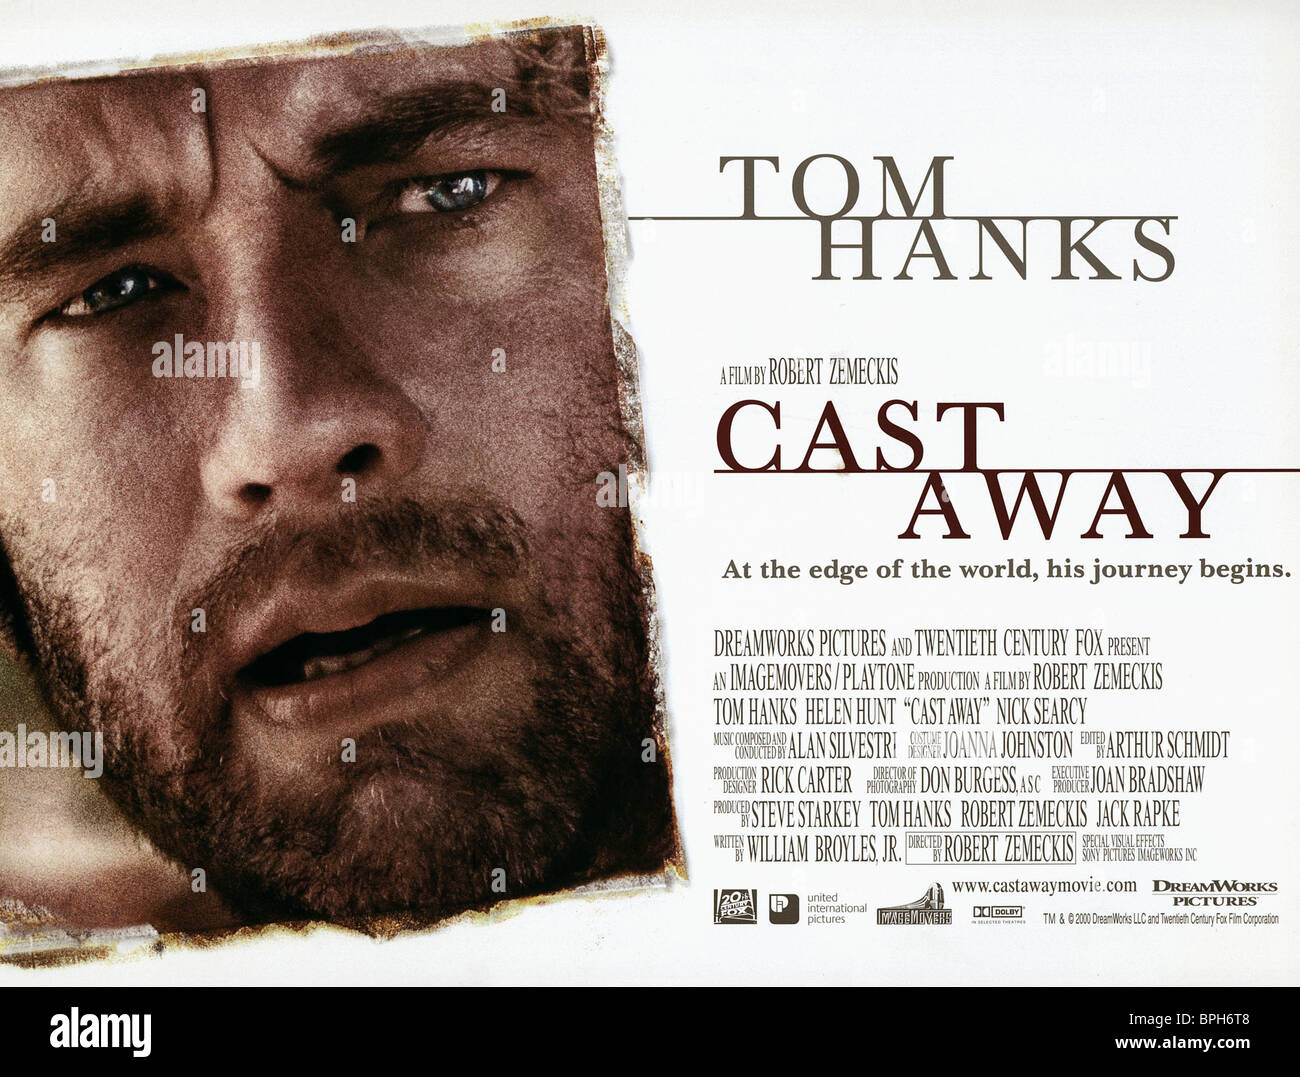 Tom Hanks Cast Away 2000 Stockfotografie Alamy